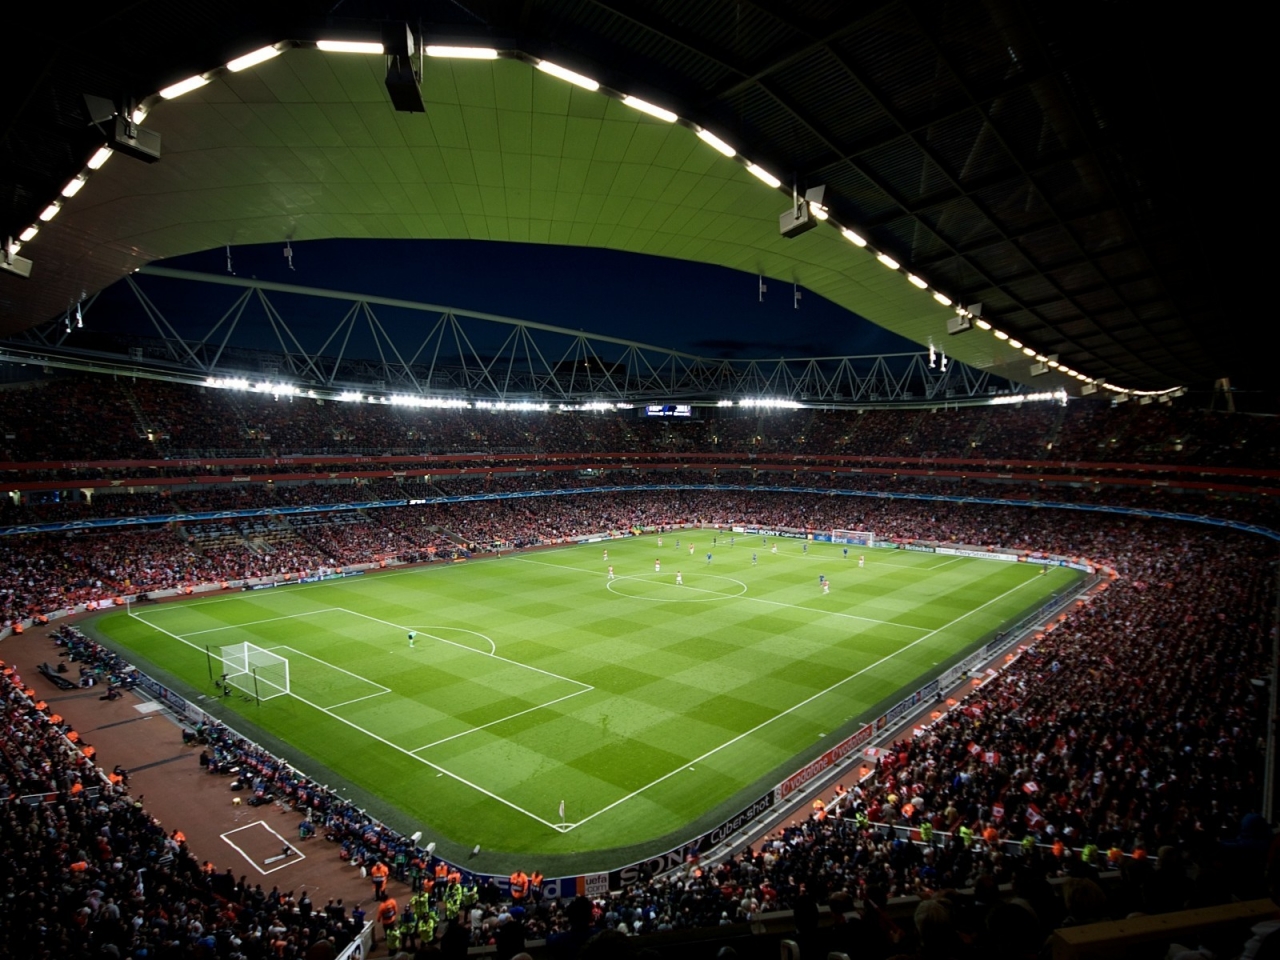 Stadium in Emirates for 1280 x 960 resolution